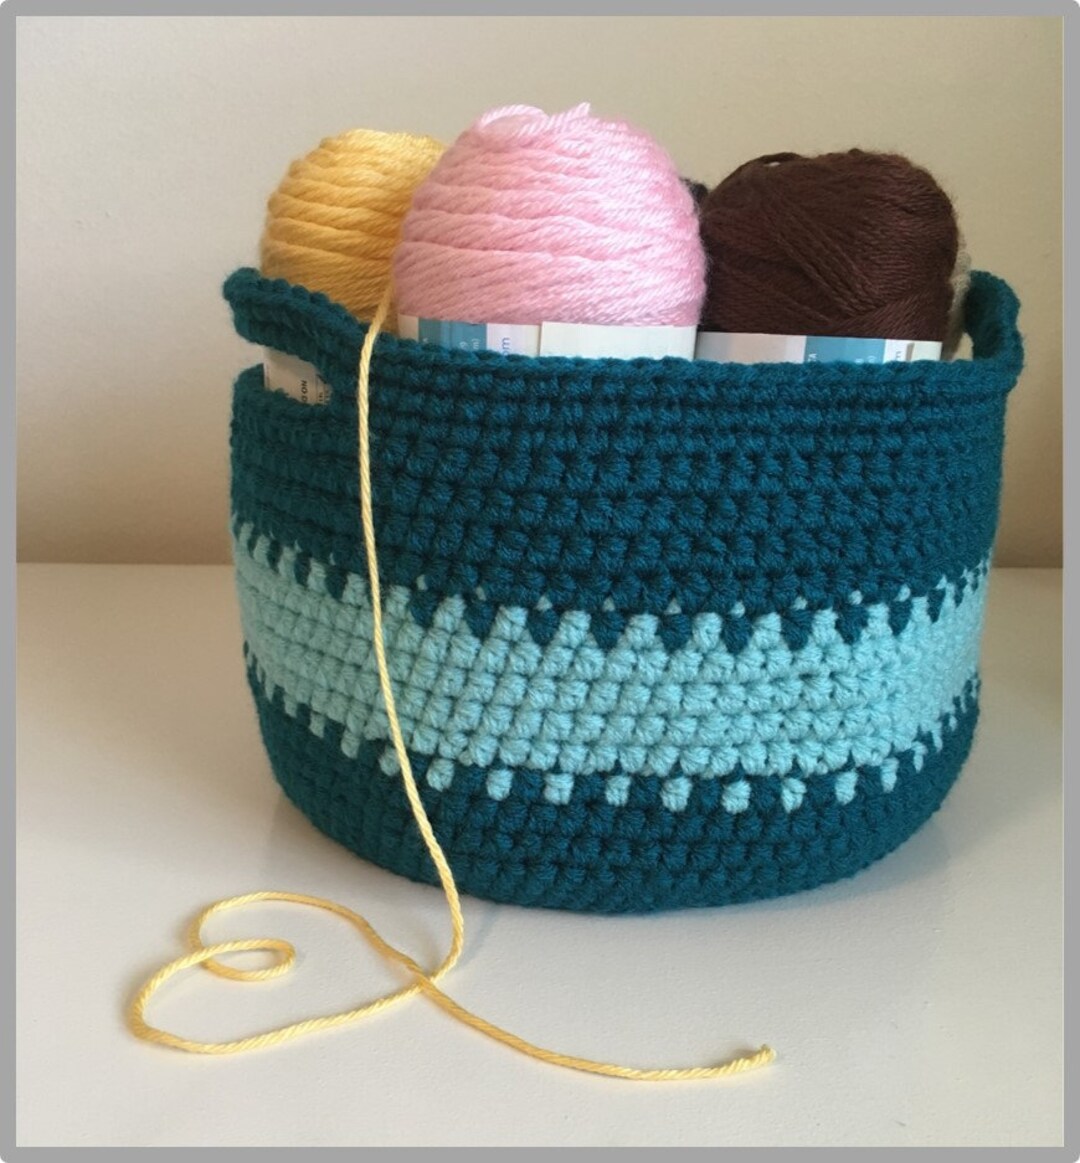 Crochet Basket ... Two-toned Striped Basket Crochet Pattern - Etsy